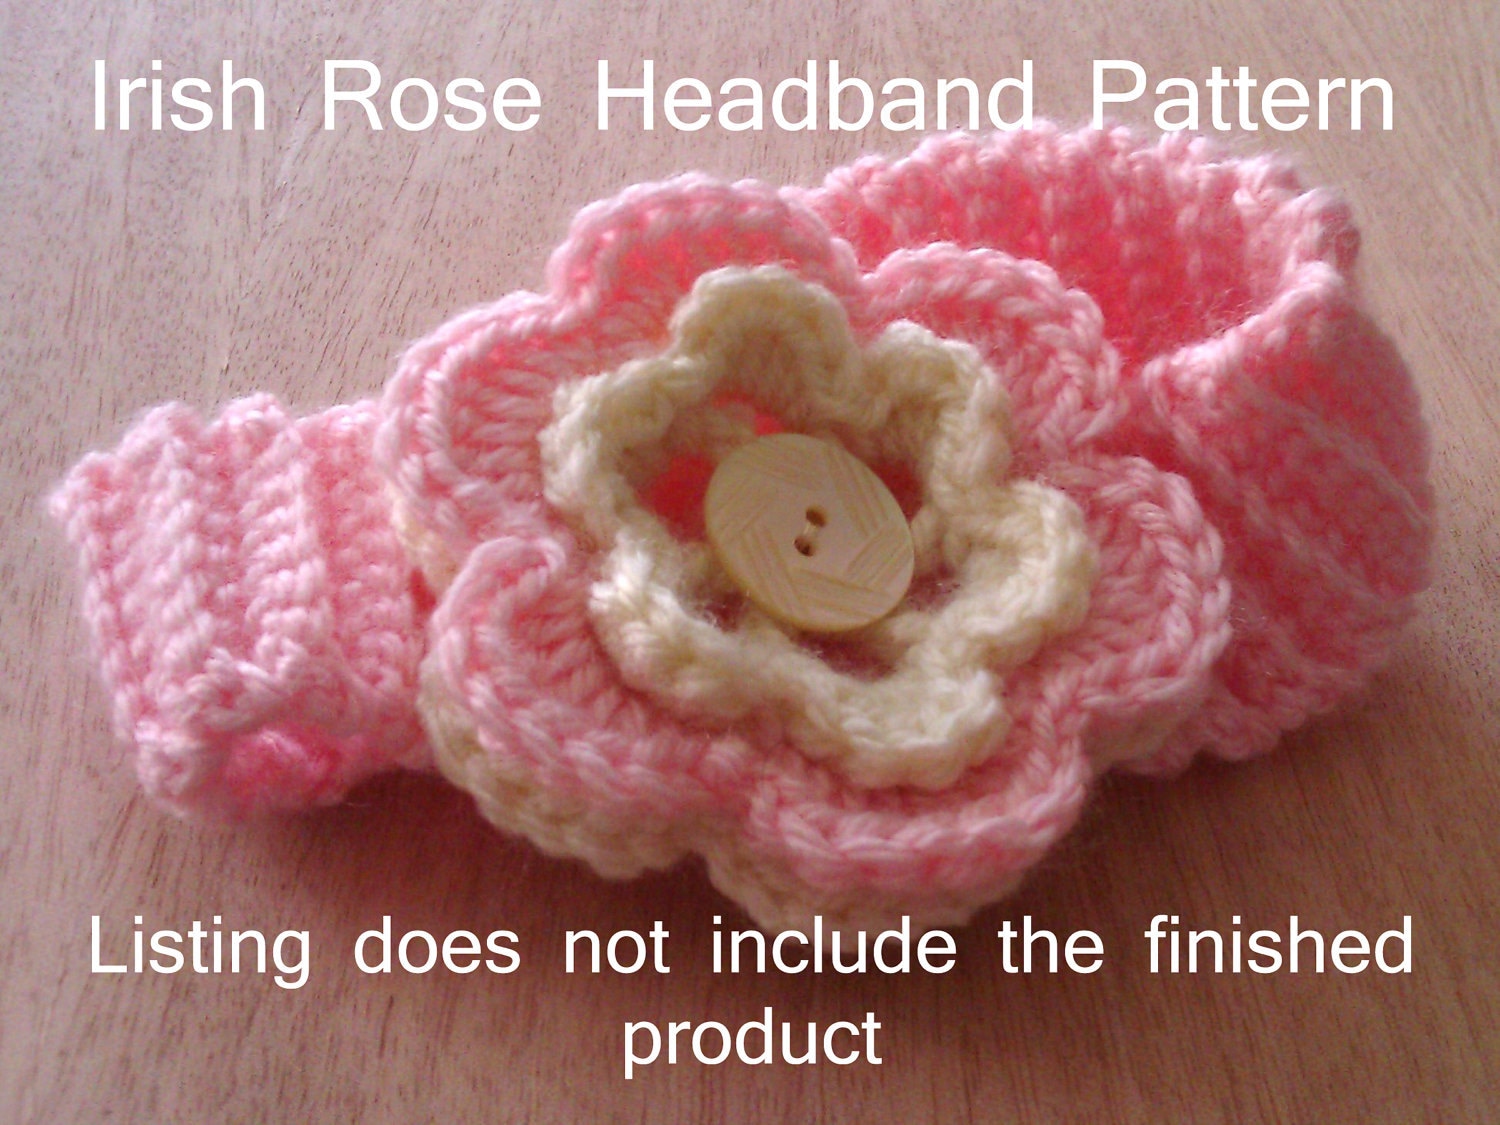 Irish Crochet type headband, anyone?